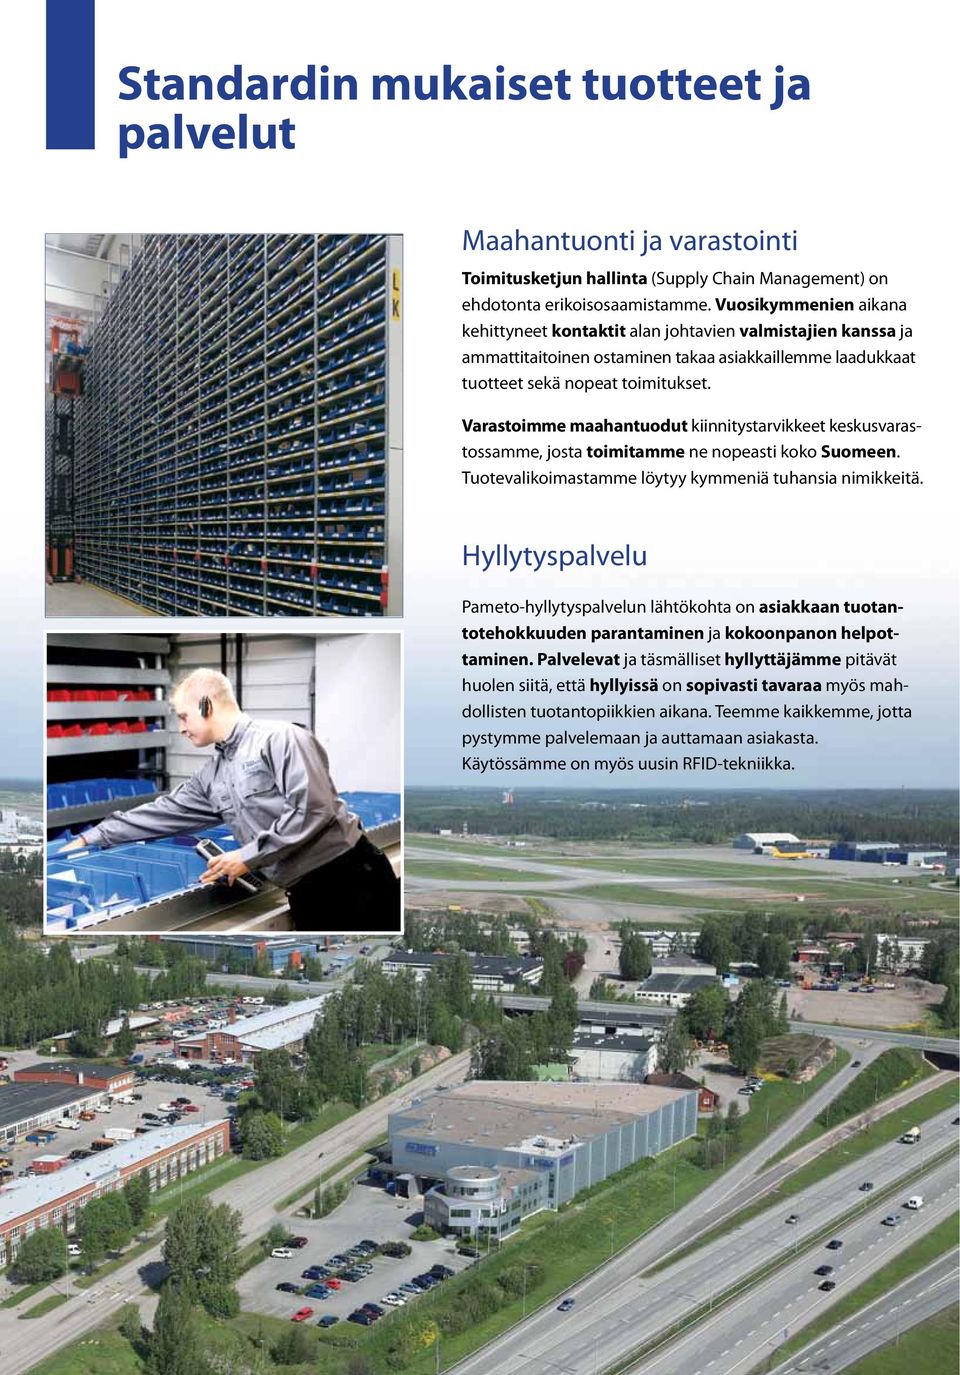 Varastoimme maahantuodut kiinnitystarvikkeet keskusvarastossamme, josta toimitamme ne nopeasti koko Suomeen. Tuotevalikoimastamme löytyy kymmeniä tuhansia nimikkeitä.